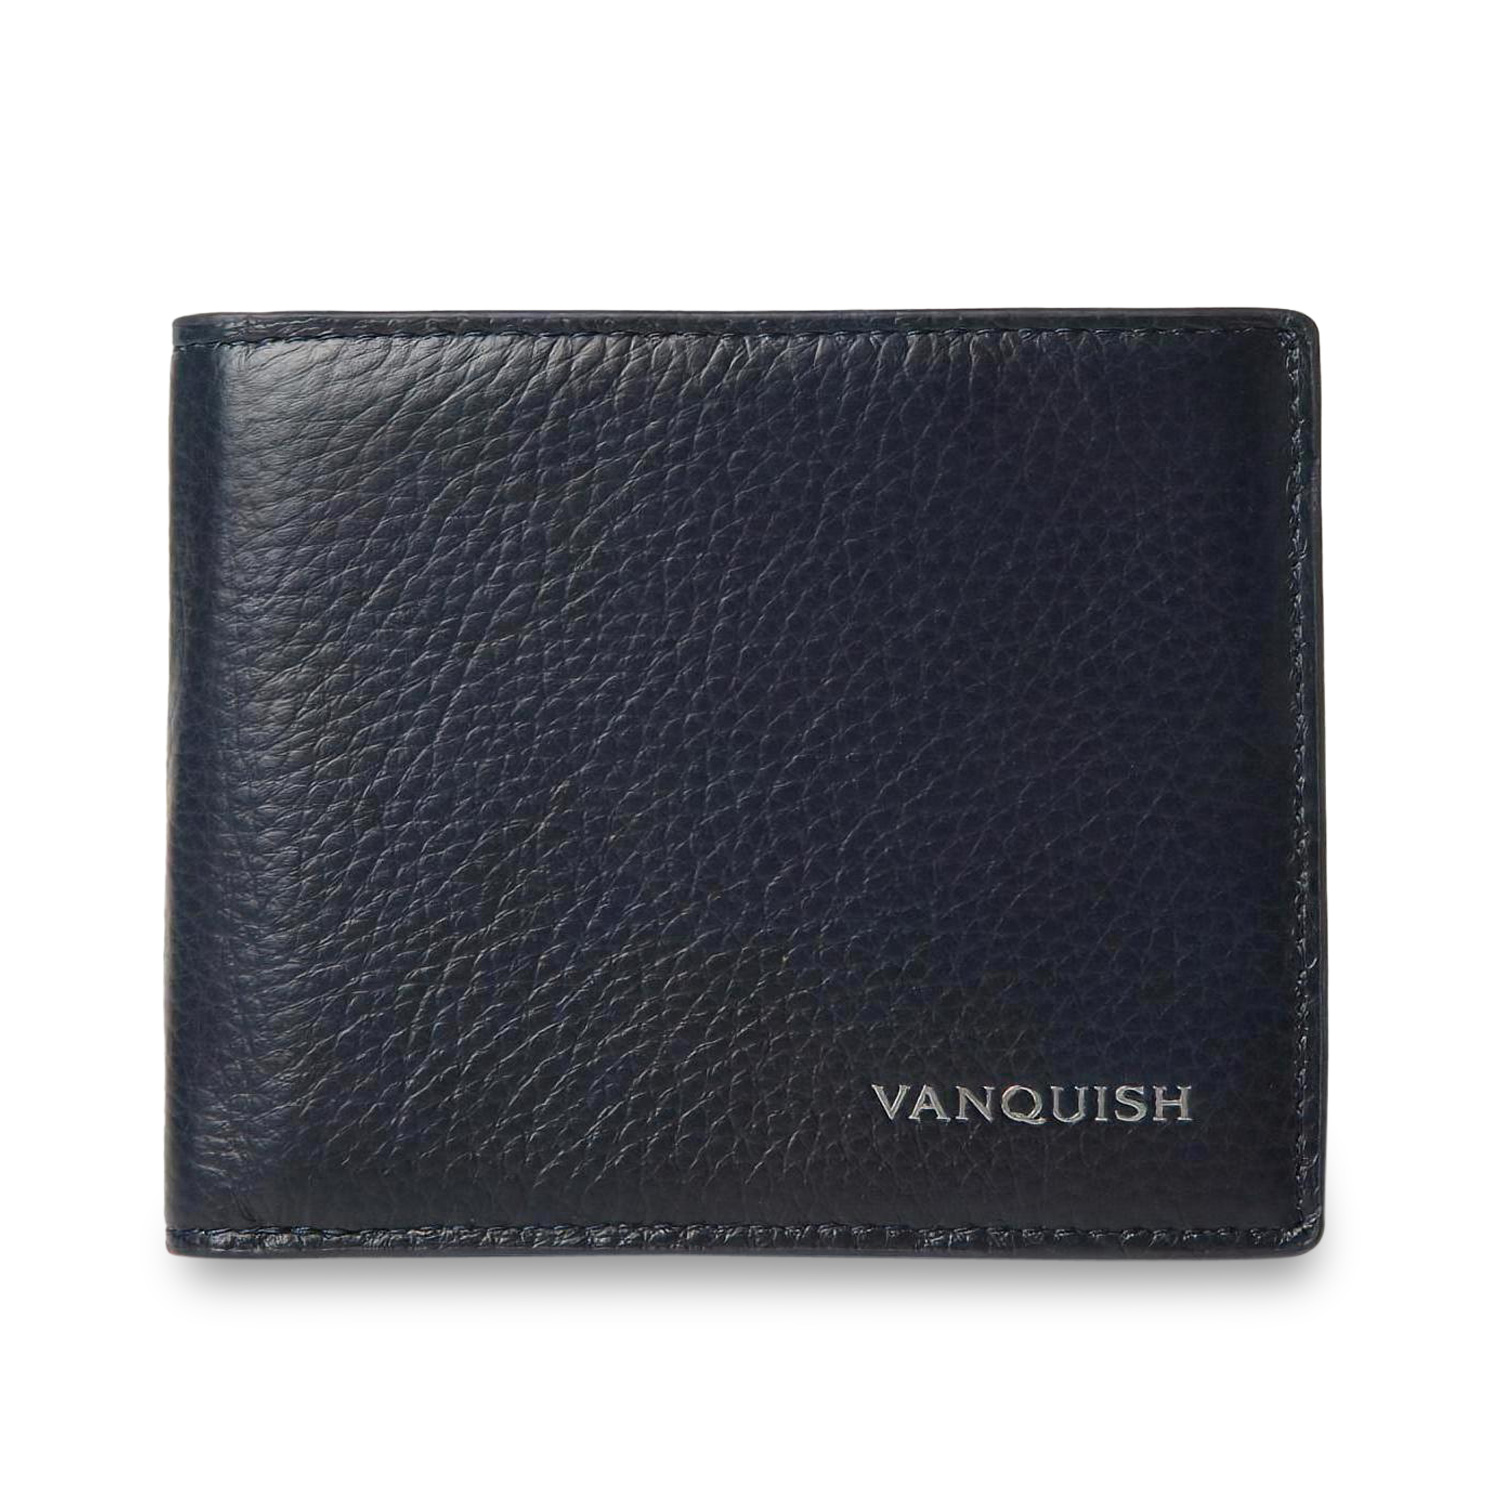 ヴァンキッシュ VANQUISH 二つ折り財布 メンズ 本革 WALLET ブラック 